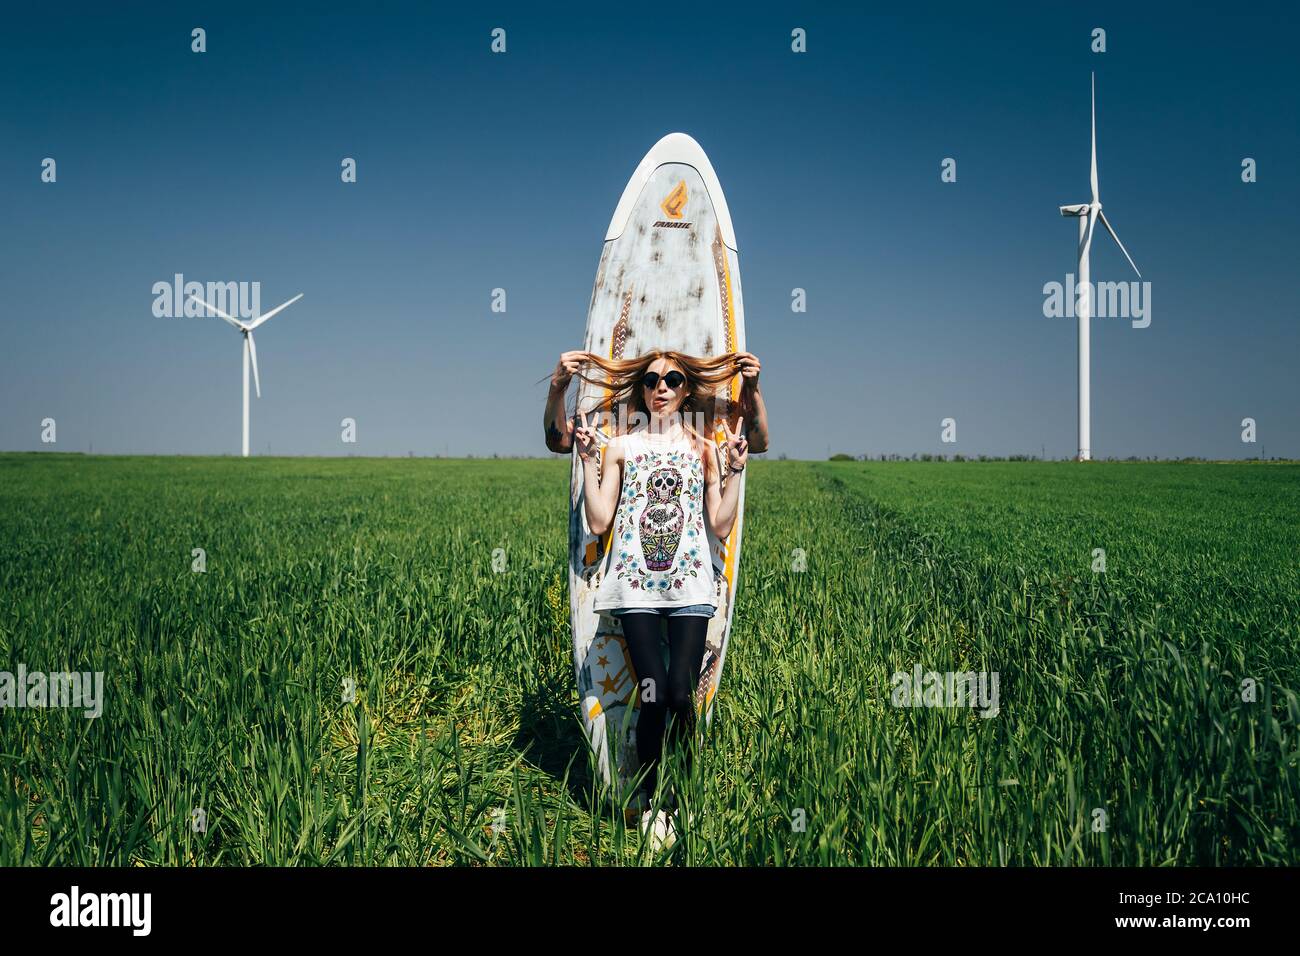 ODESSA, UKRAINE - MAI, 20 2015: Das niedliche junge Hipster-Paar macht mitten im Grünen mit einem Surfbrett, einem fröhlichen Outdoor-Portrait Spaß Stockfoto